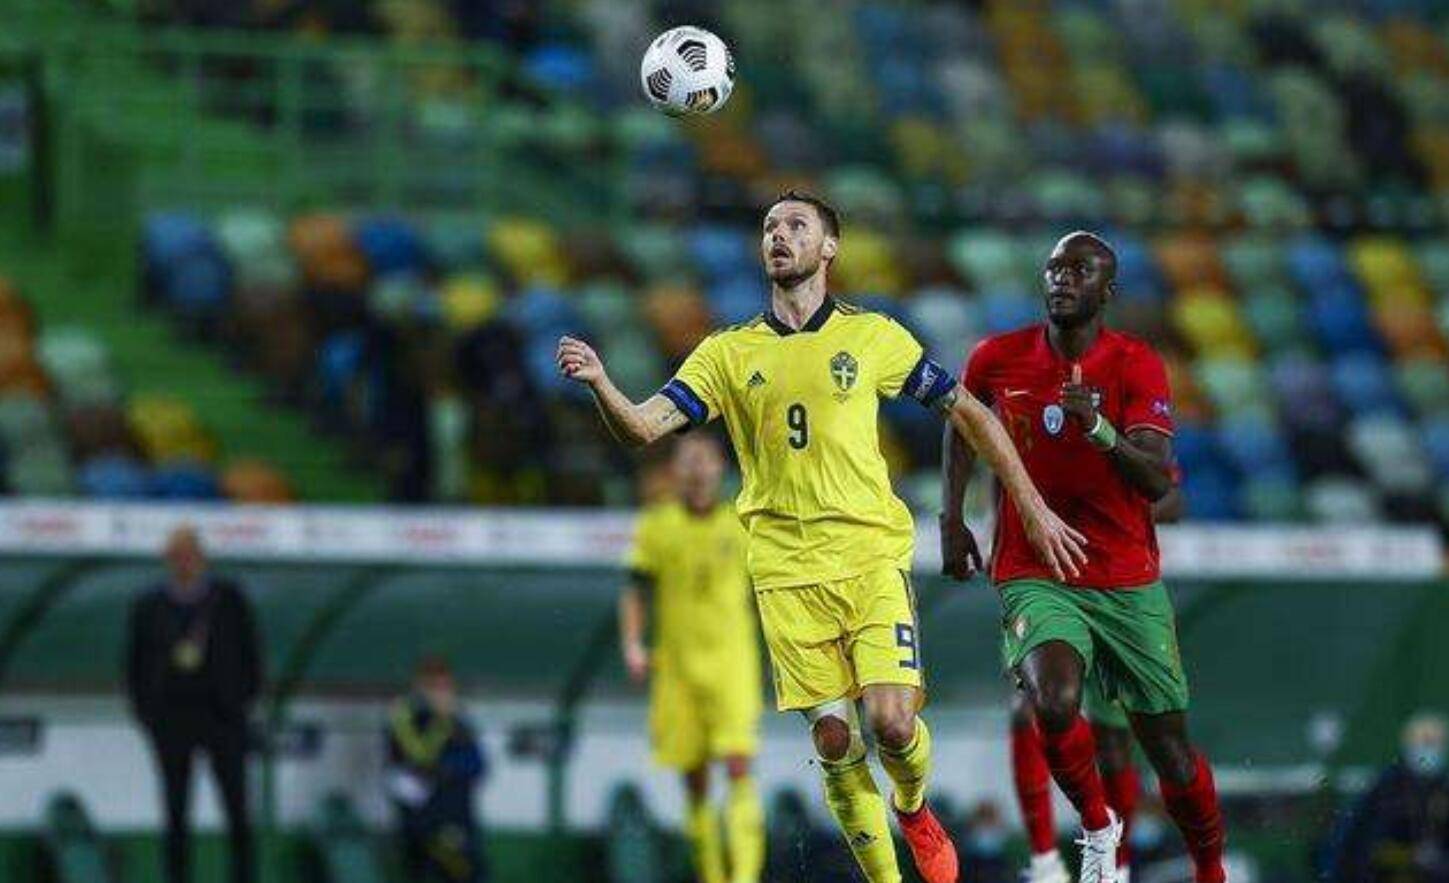 
欧国联 瑞典vs克罗地亚 莫德里奇领衔 缺少伊布瑞典难挡克